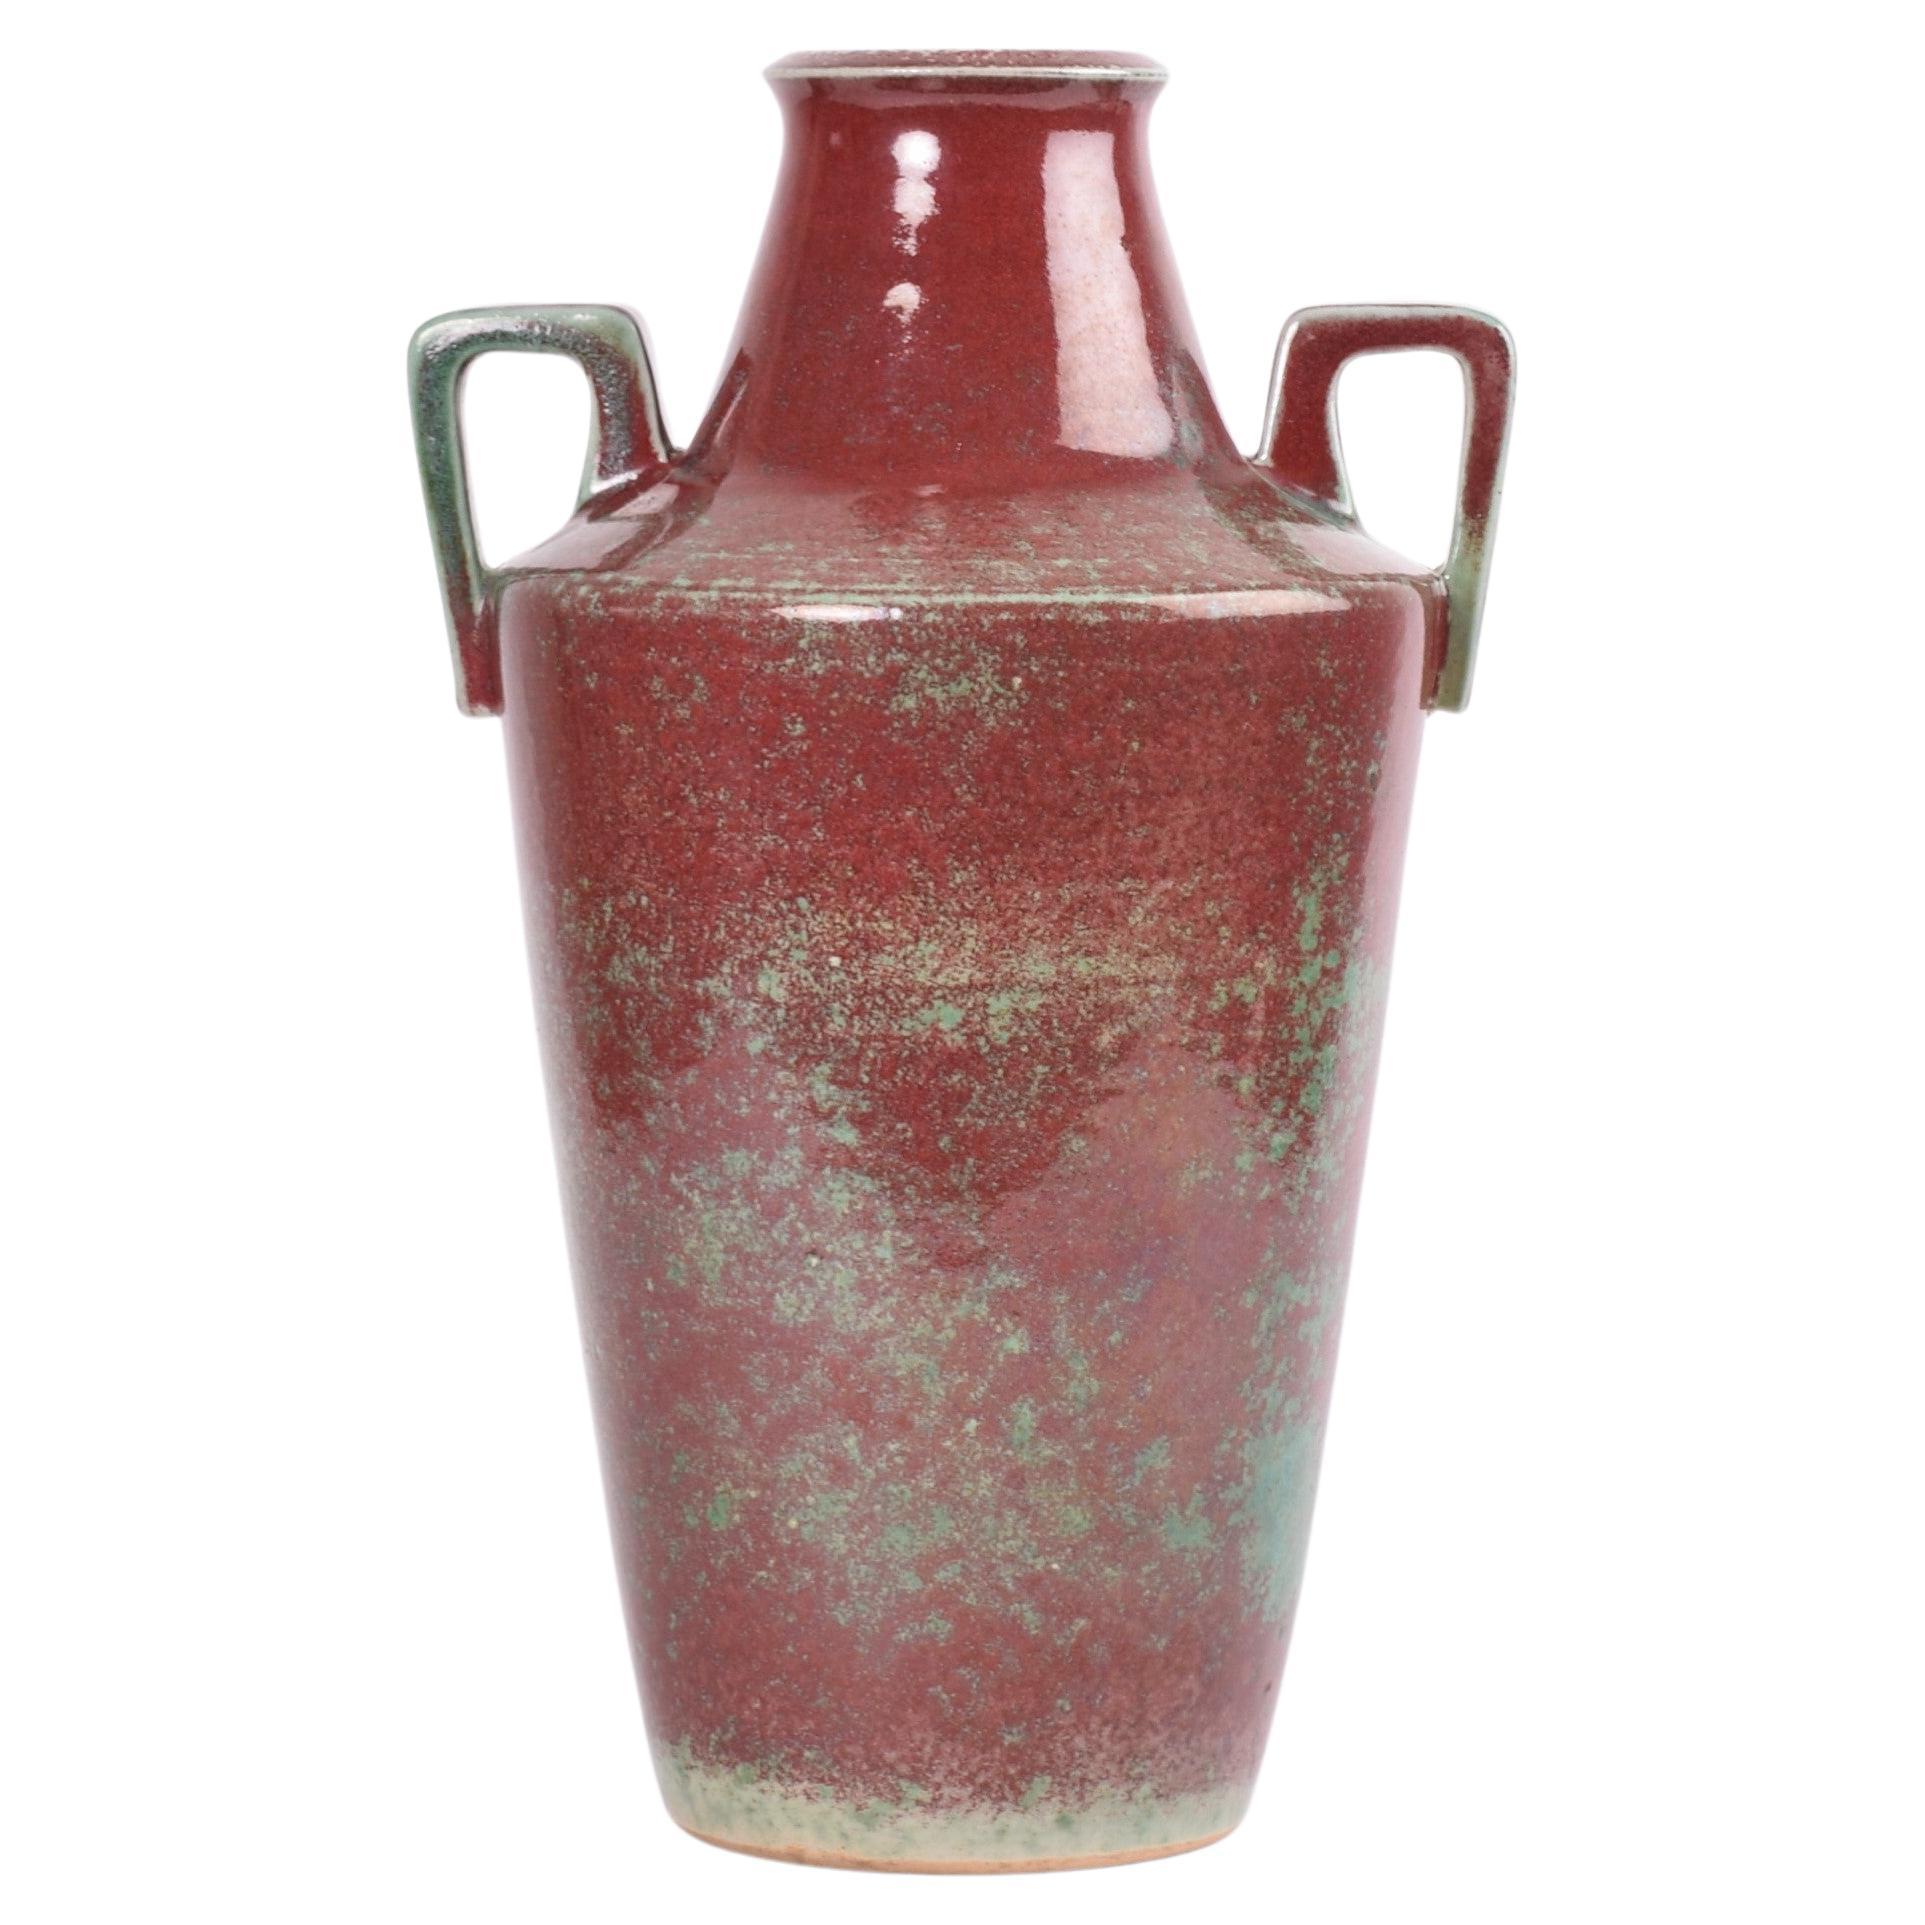 Vase à poignée unique Art Déco danois du célèbre fabricant de céramique Michael Andersen & Sn. Fabriqué vers les années 1920 à 1930.
Le vase est recouvert d'une glaçure rouge sang de bœuf avec un vert émeraude.

Le vase est signé à la main sur le